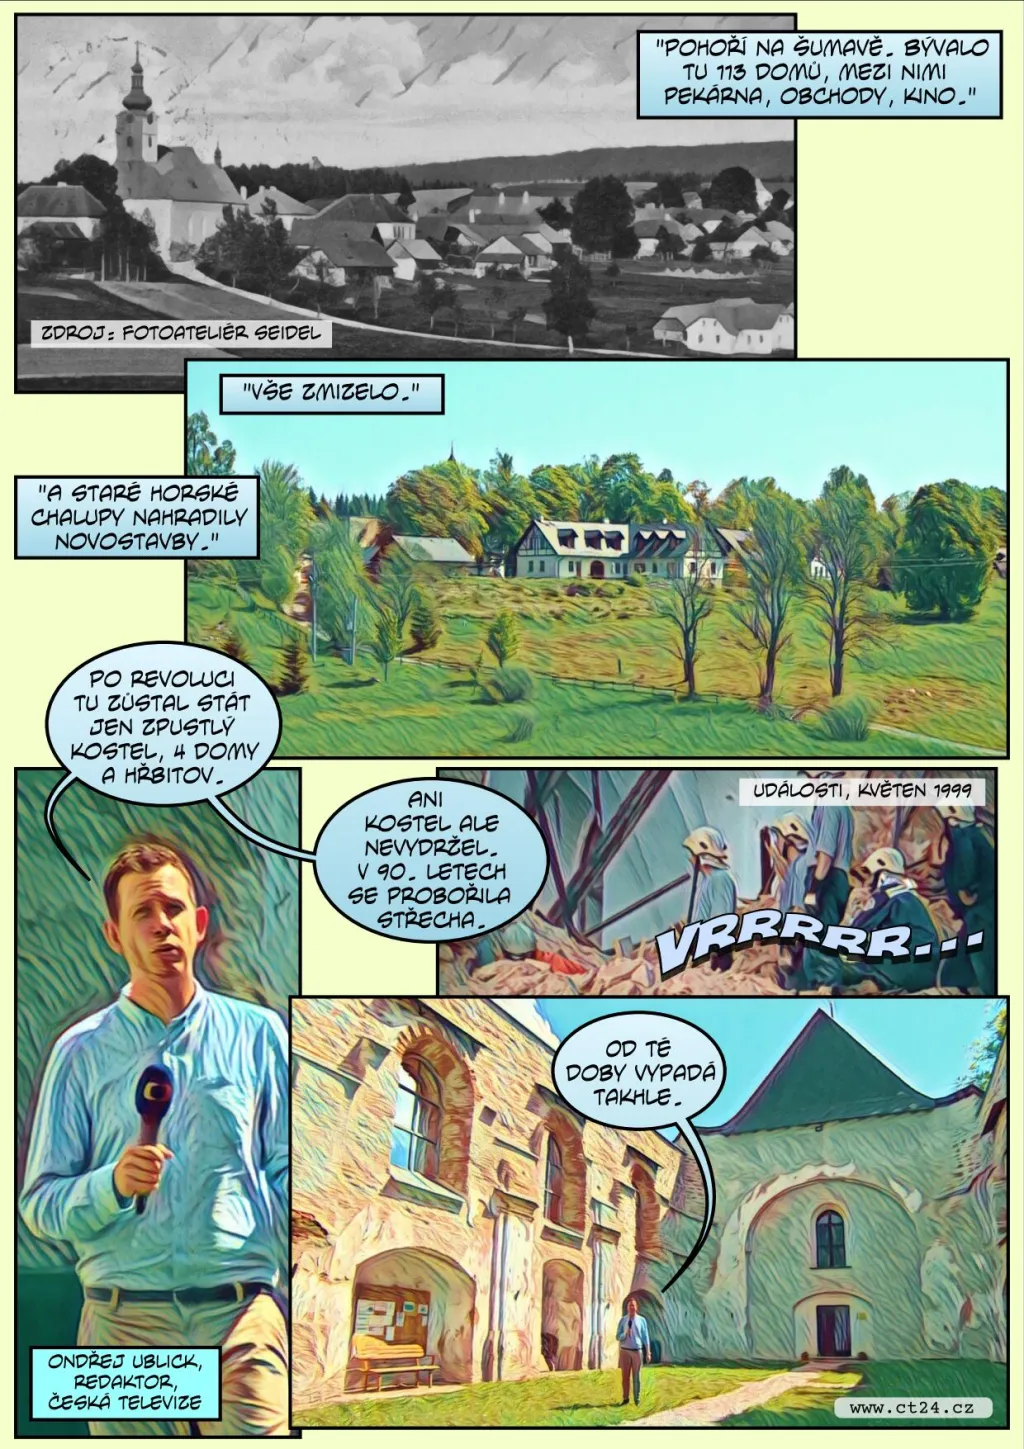 Komiks: Virtuální oživení zaniklých šumavských vesnic